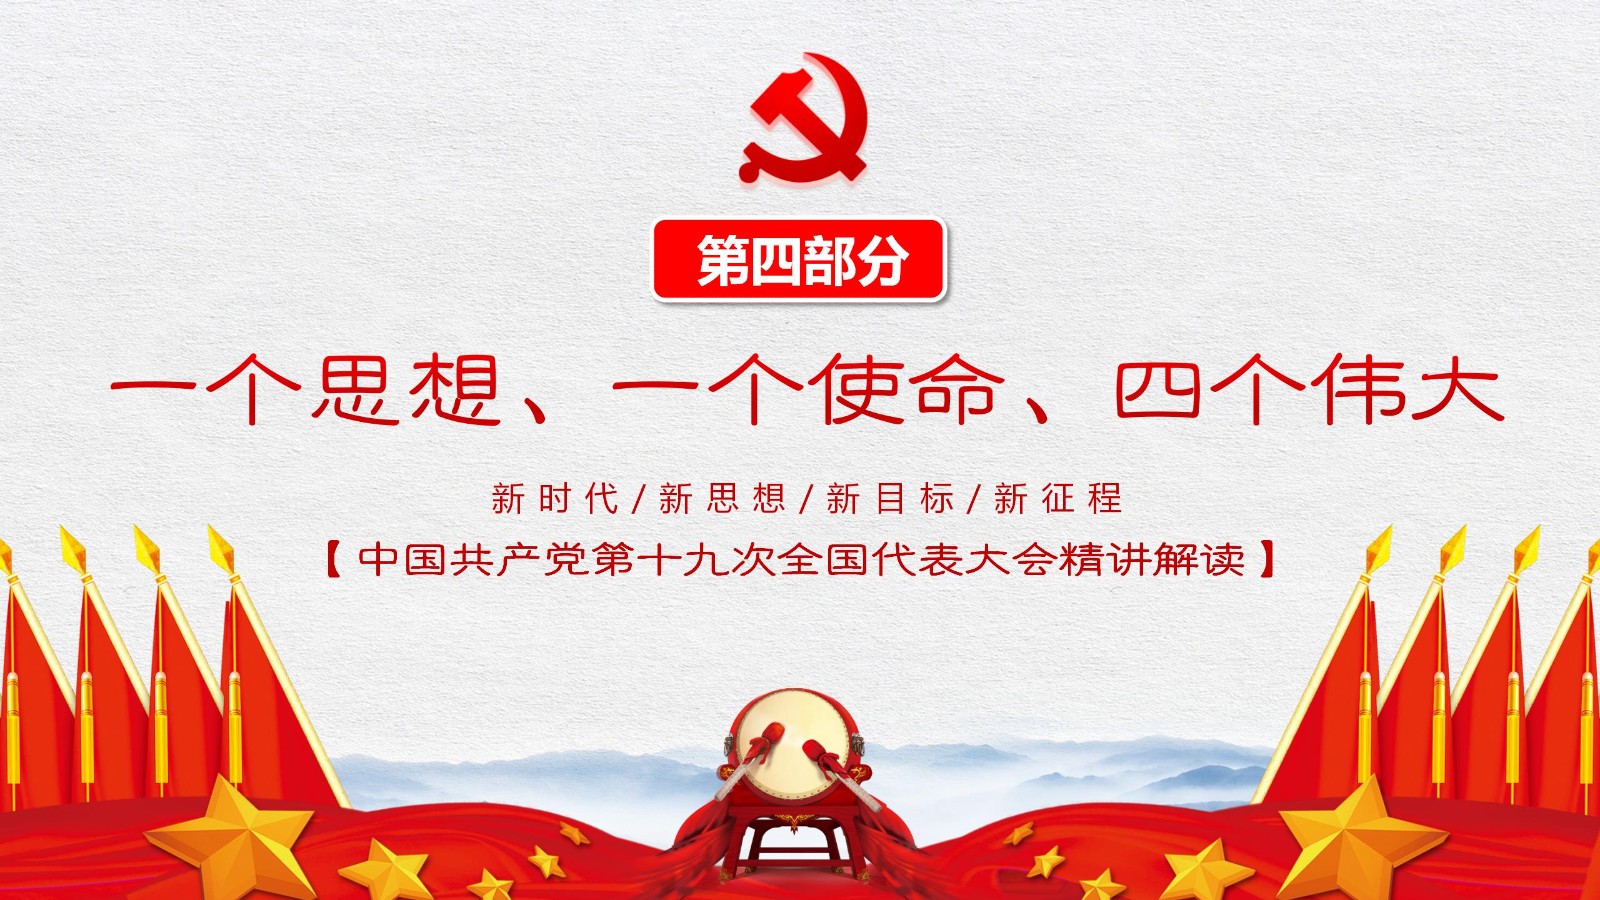 中国特色社会主义旗帜模板28